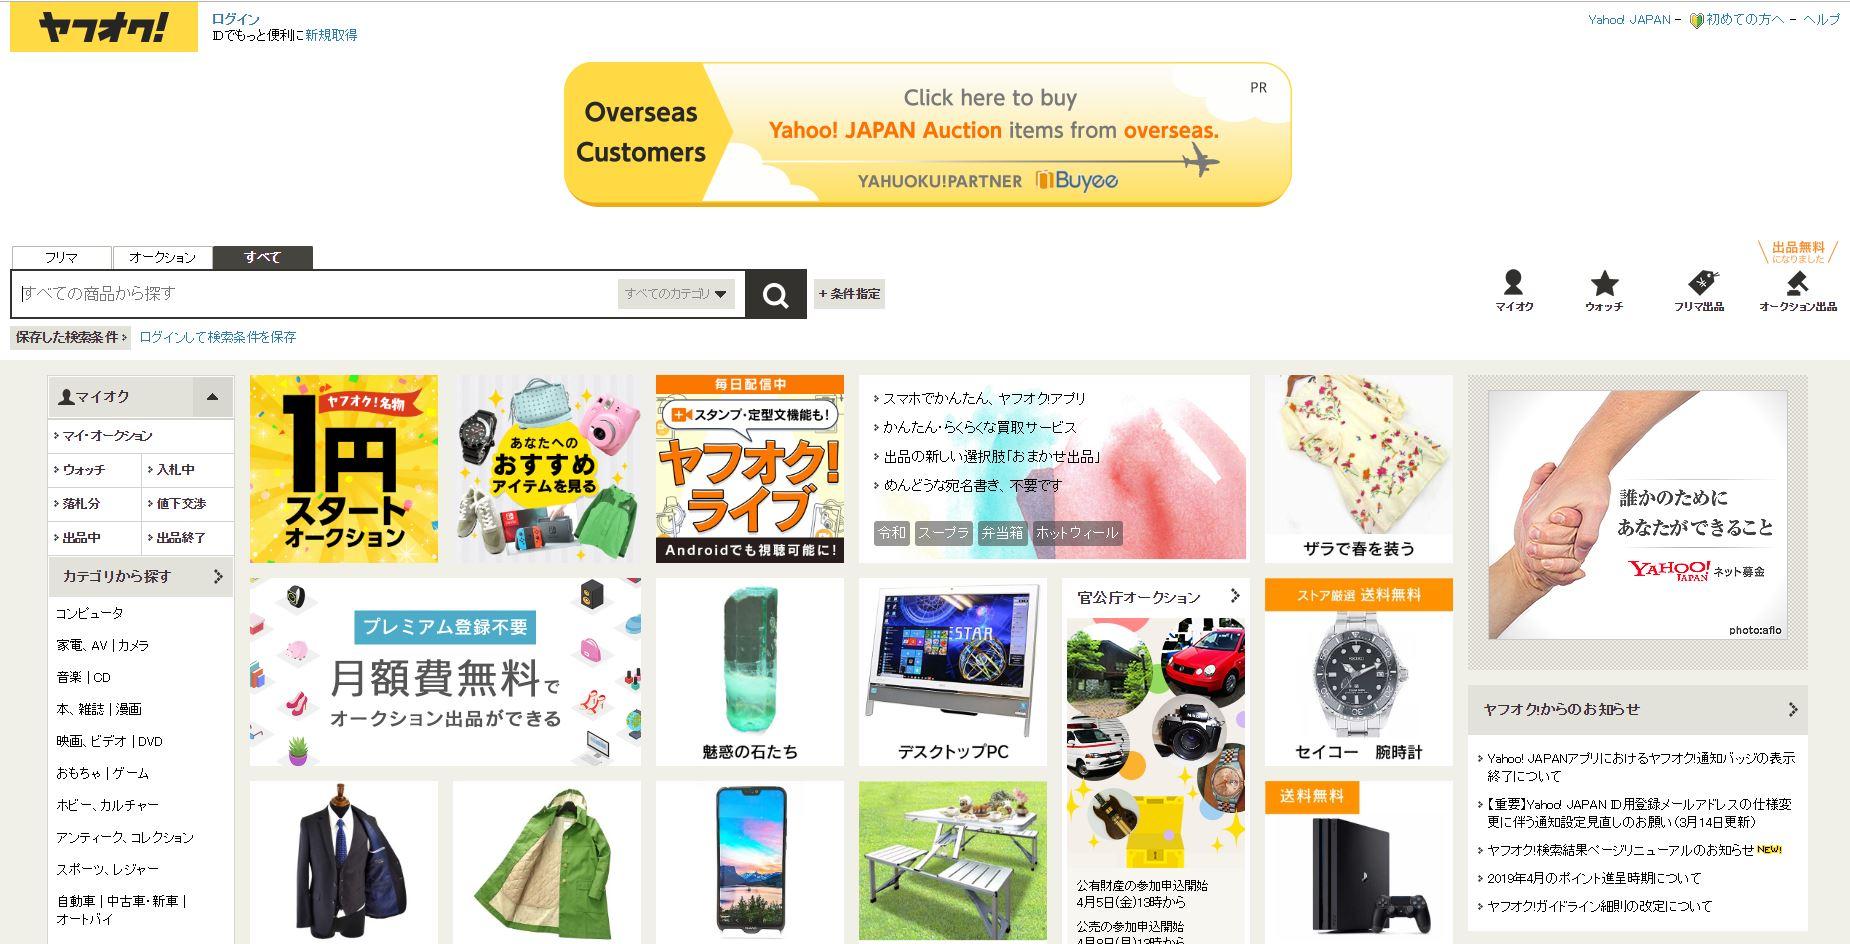 Hướng dẫn chi tiết cách đăng ký tài khoản đấu giá Yahoo Auction Japan